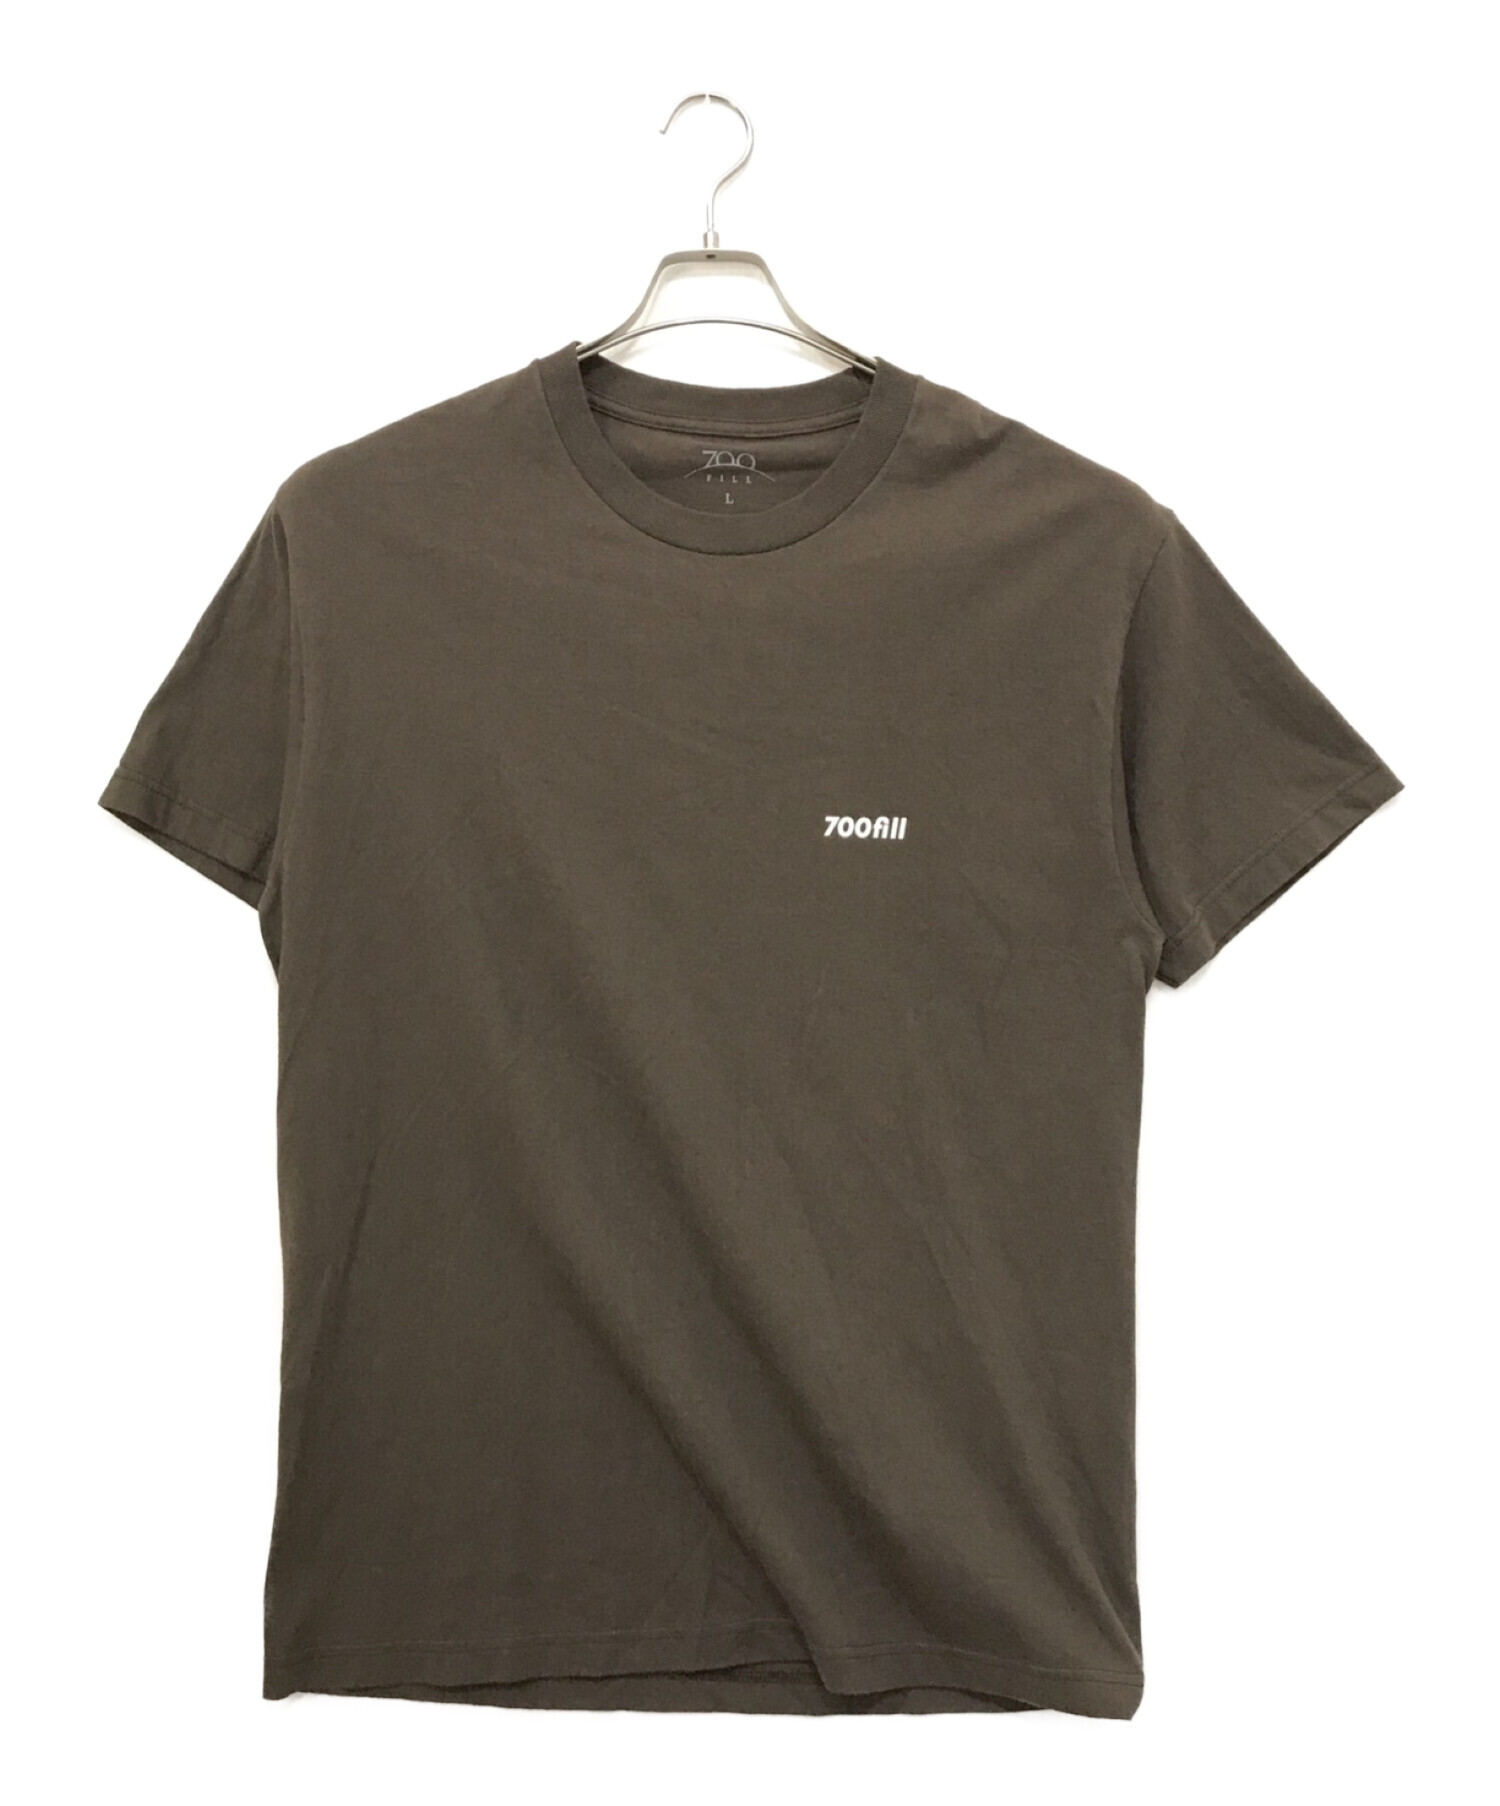 700FILL (700フィル) プリントTシャツ ブラウン サイズ:L